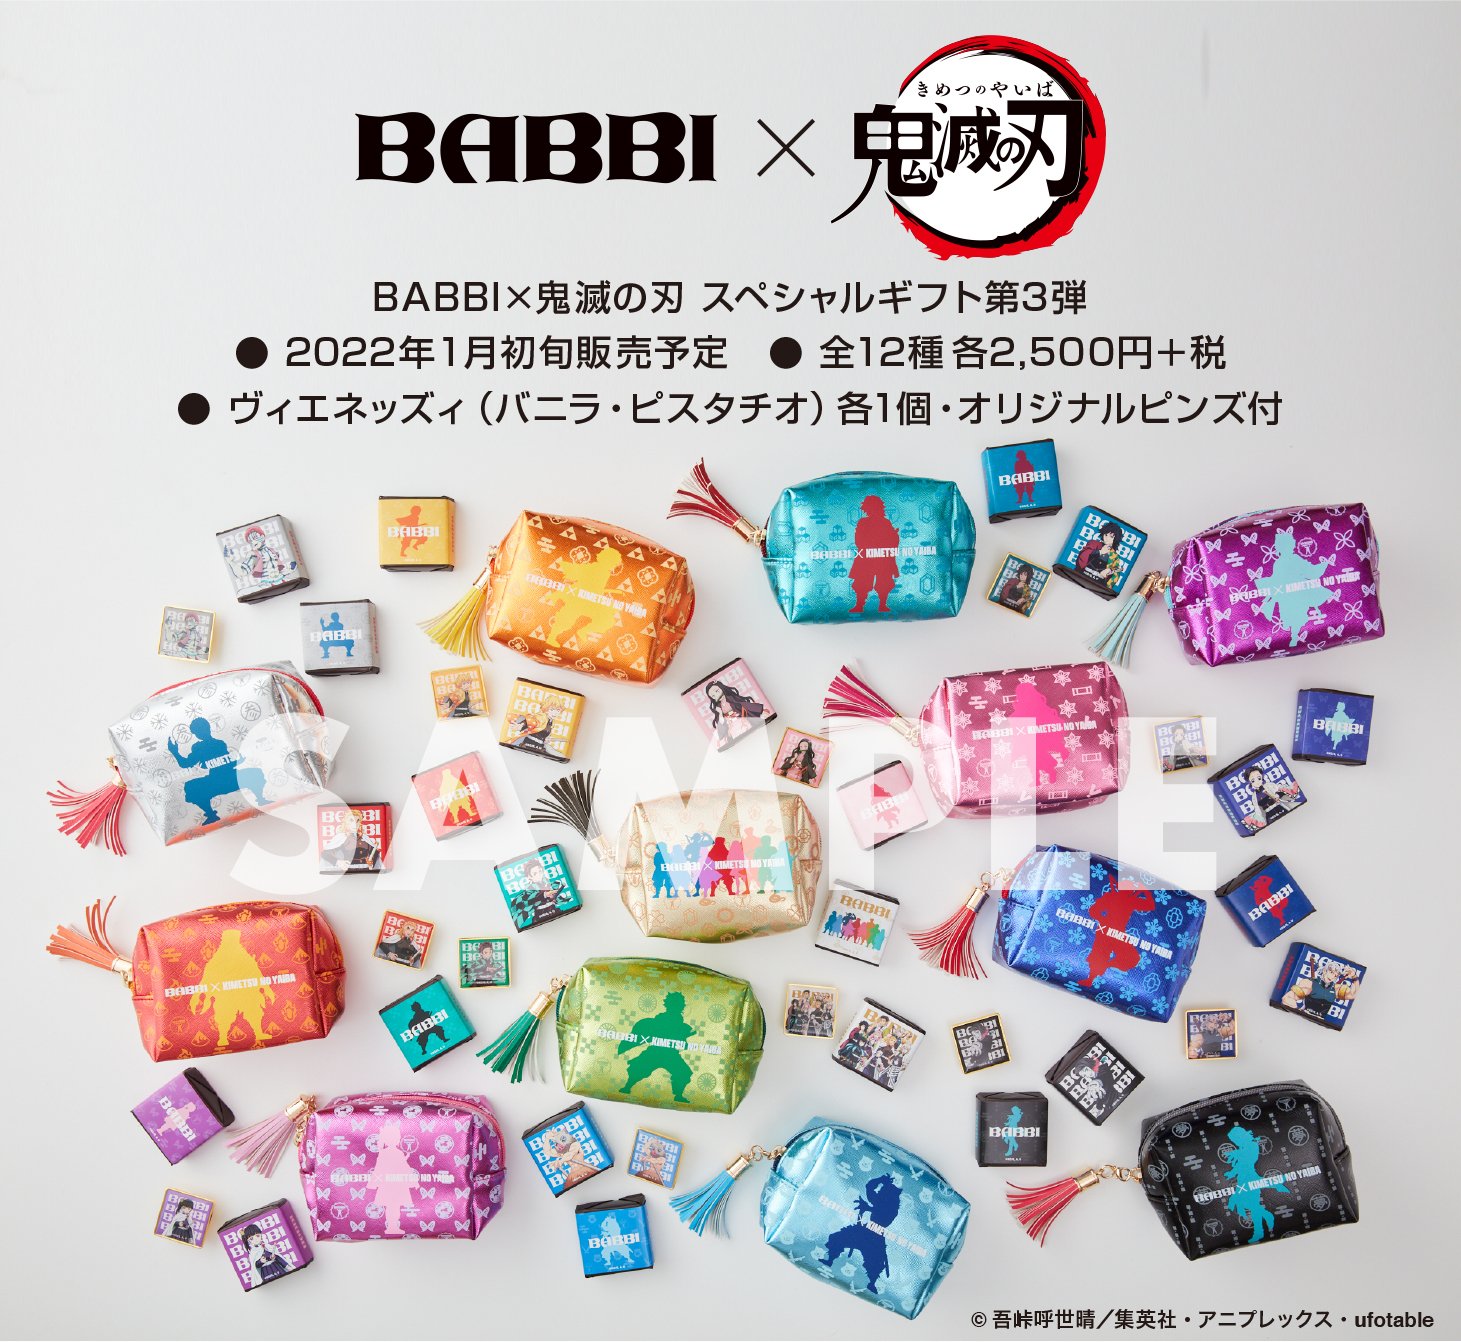 BABBI Japan (@babbi_japan) / X